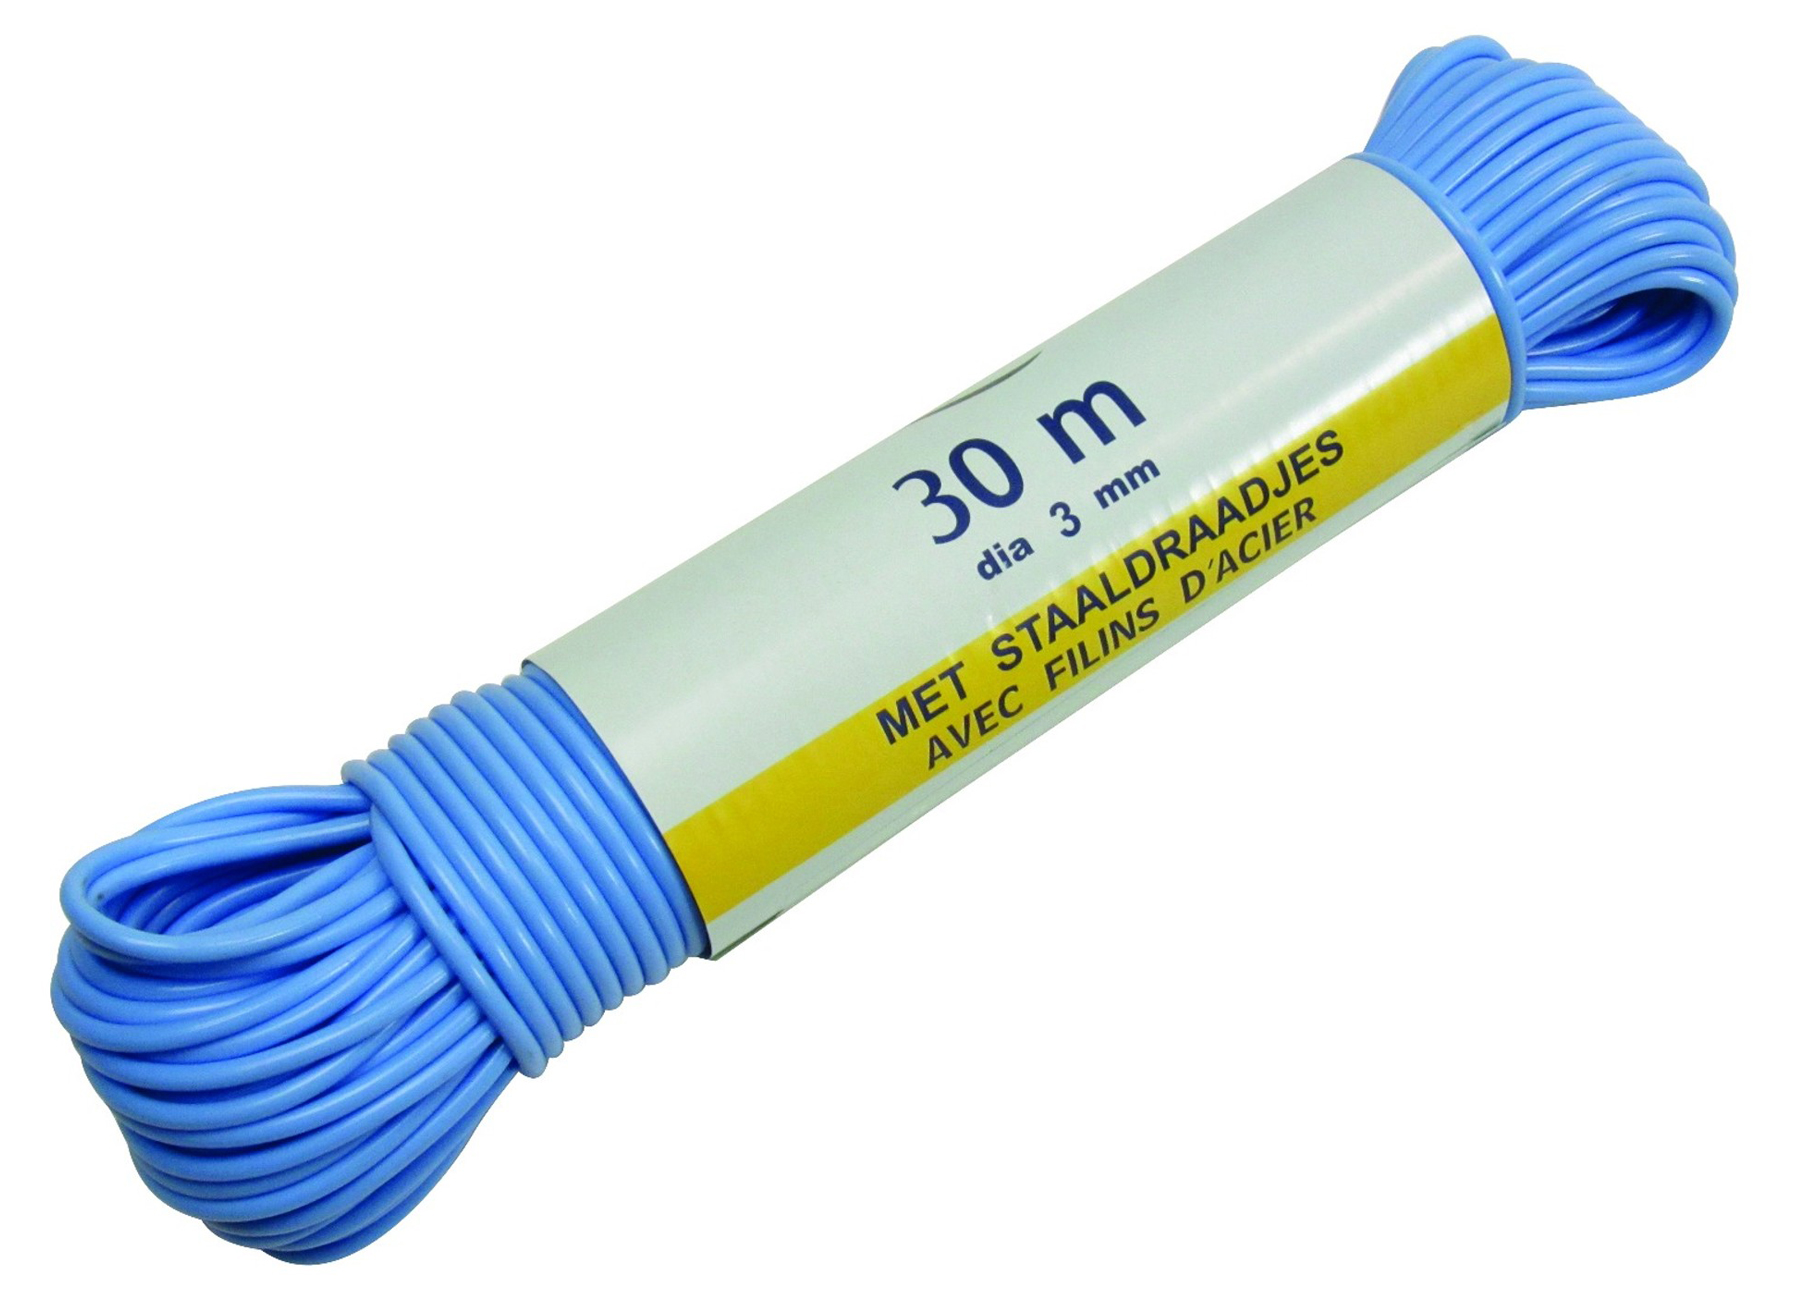 Corde A Linge Cable Acier - menage - menage utilitaire - sechoirs